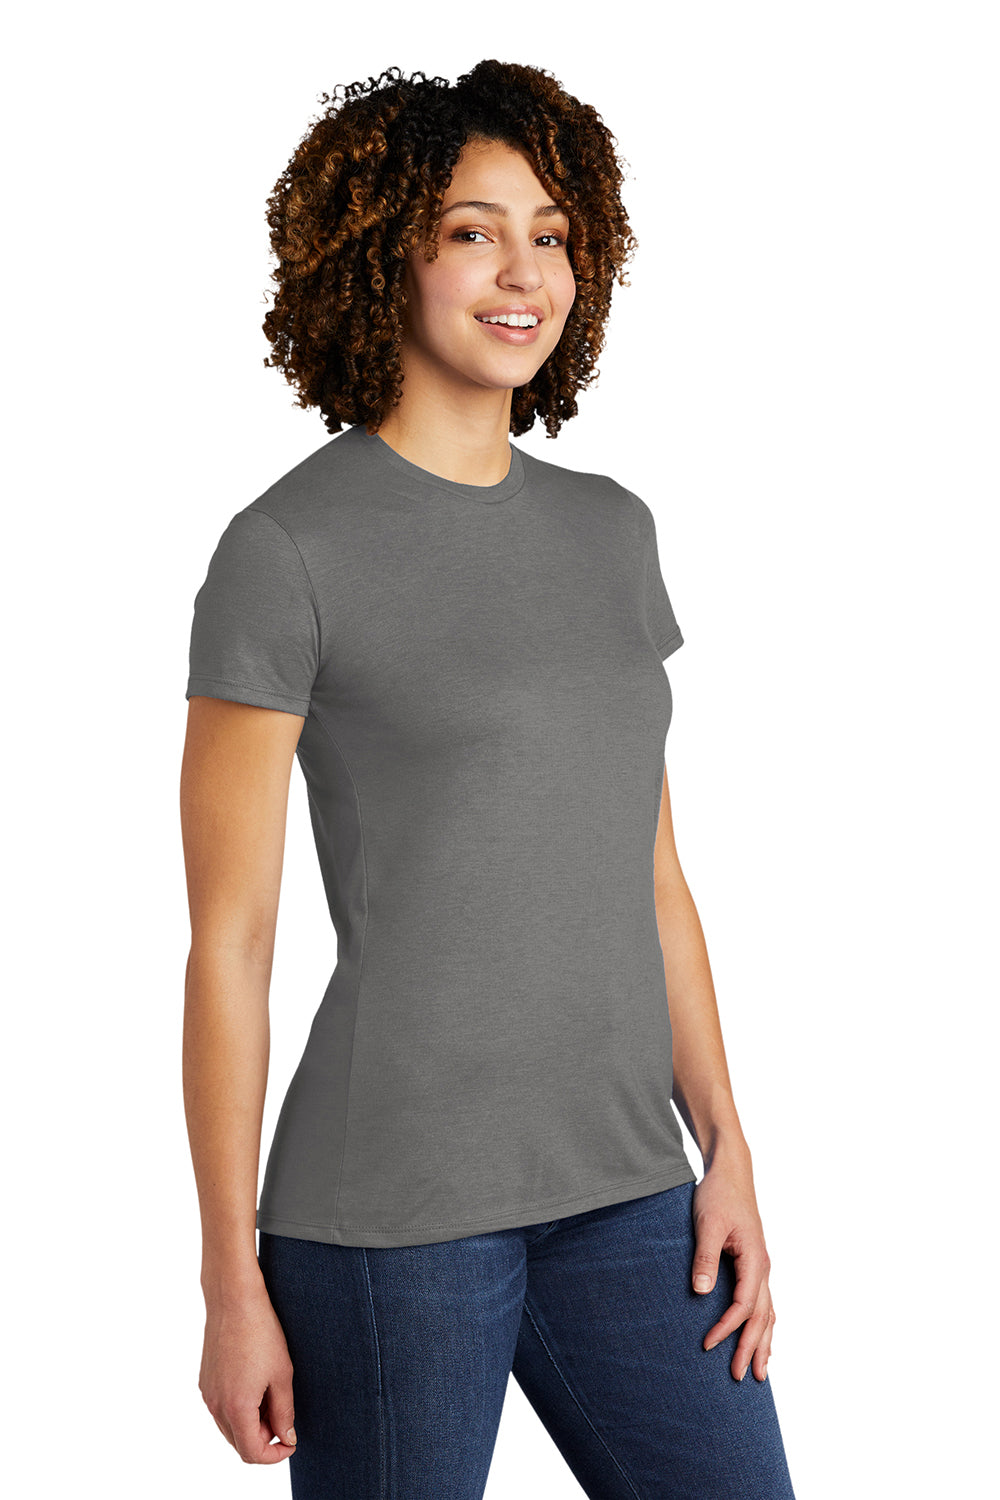 Allmade AL2008 Womens Short Sleeve Crewneck T-Shirt Aluminum Grey Model 3Q